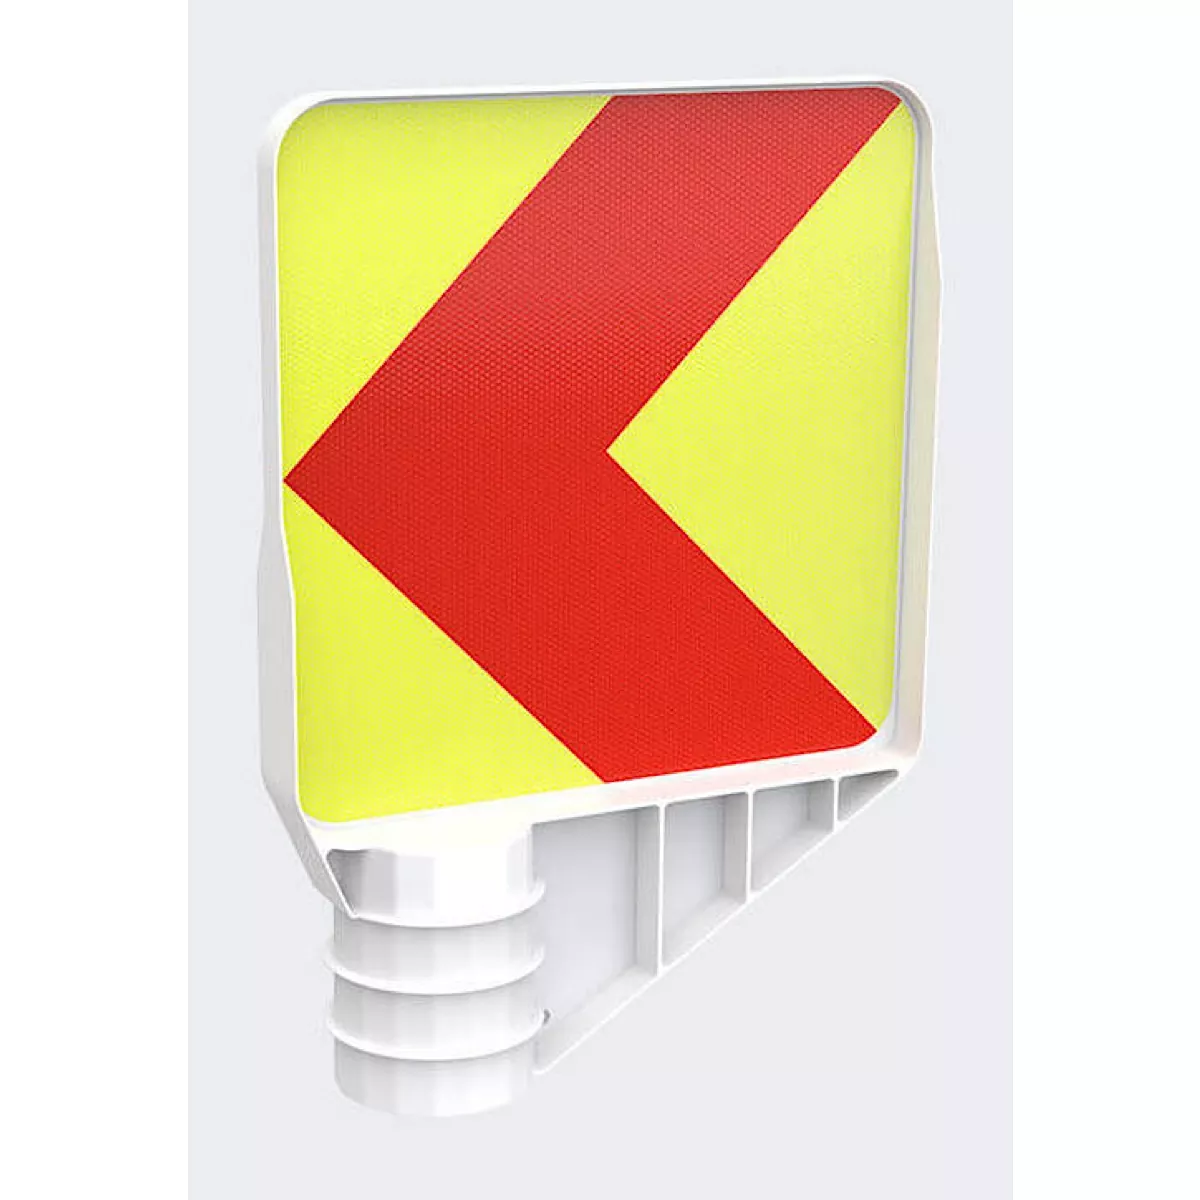 VARIO-Kurvenleittafel, Rechter Fahrbahnrand für Linkskurven, rot-gelb, Vorderseite linksw.-Rückseite reschtsw. (VE 5 St.)